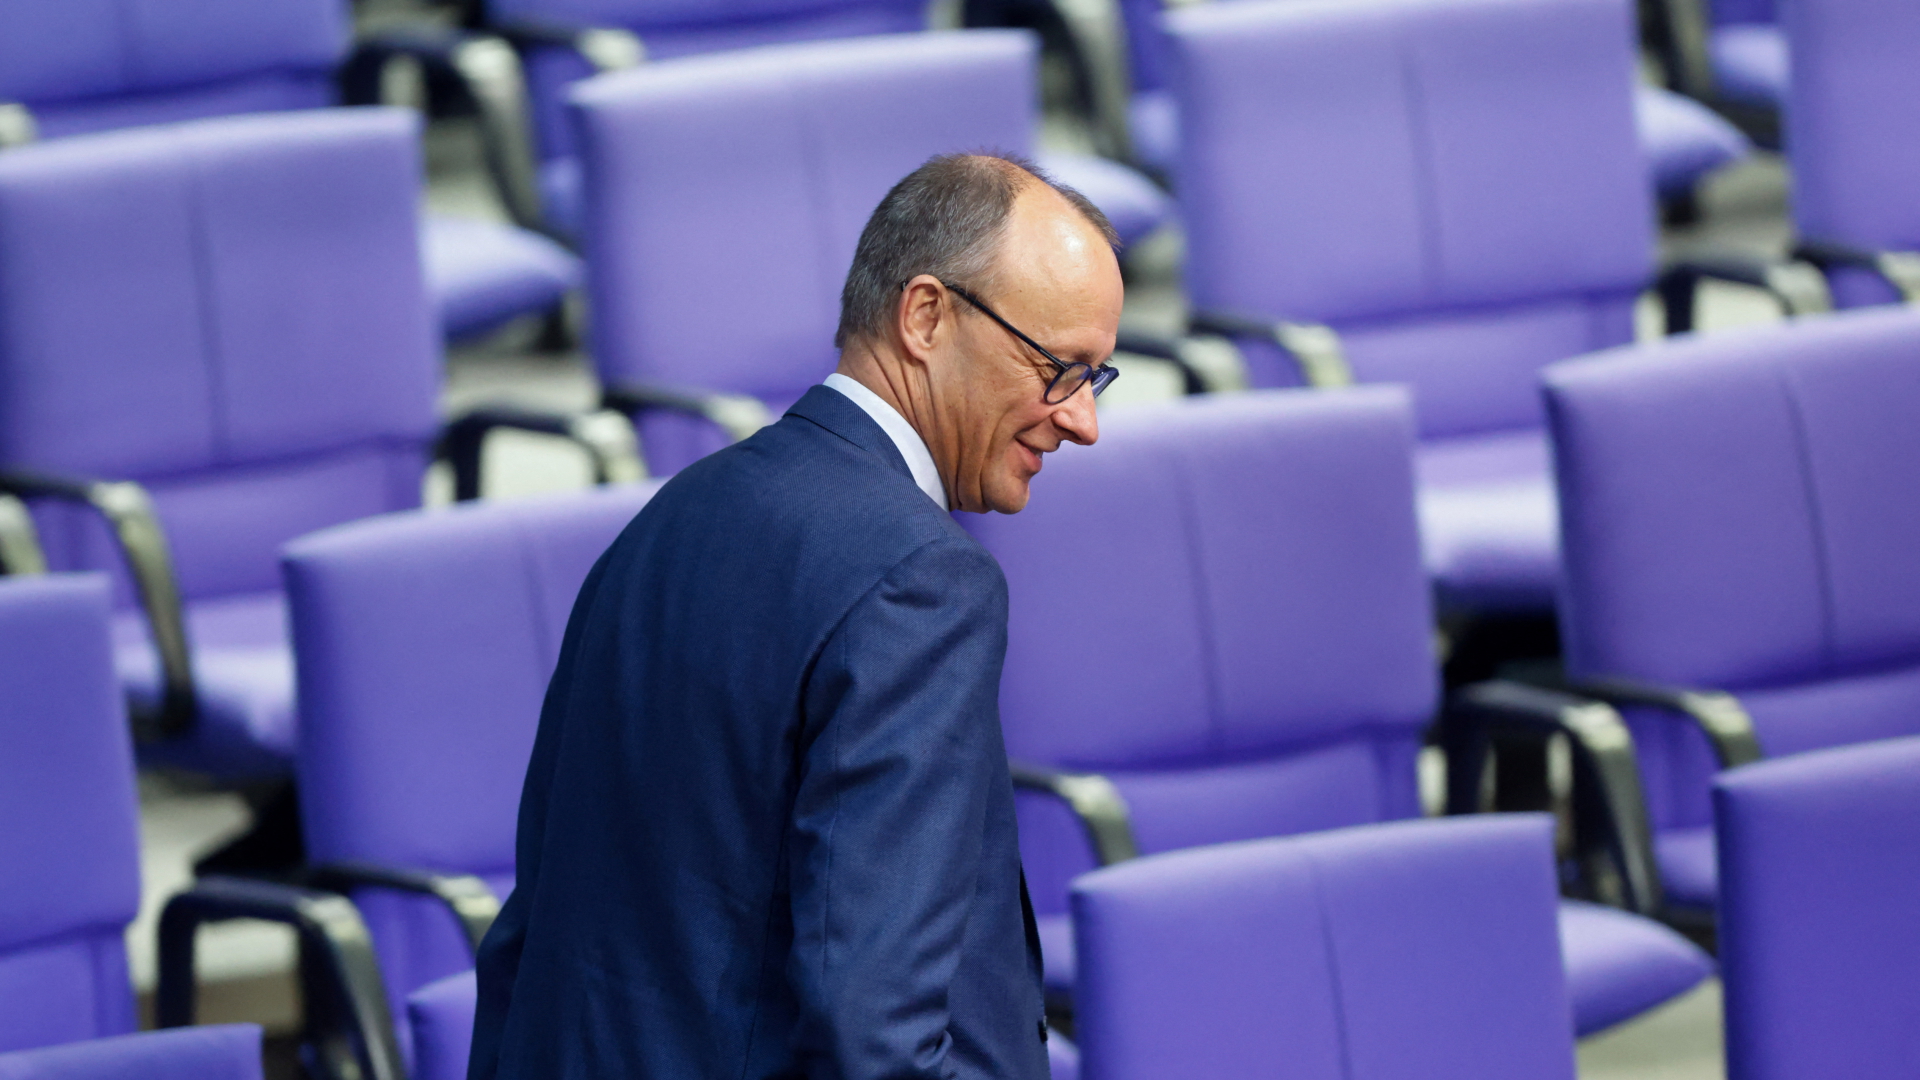 Unions-Fraktionschef Friedrich Merz im Bundestag. | REUTERS